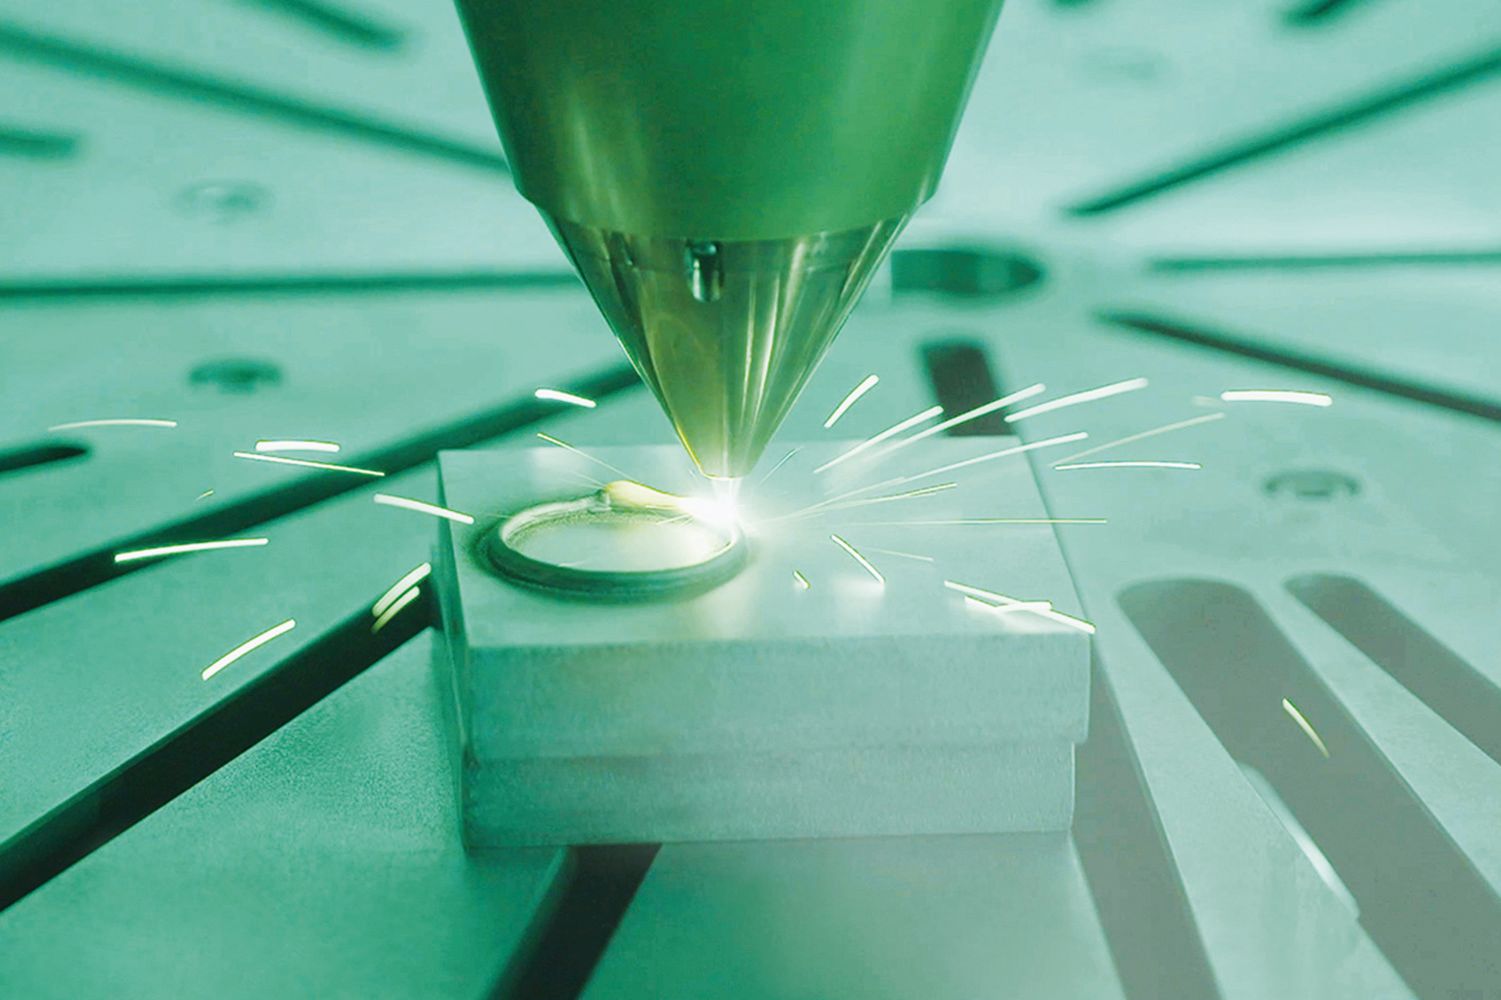 Am Fraunhofer IWS in Dresden wird das einsetzbare Spektrum von additiv verarbeitbaren Werkstoffen erweitert. Mittels maßgeschneiderter Laserauftragschweißprozesse lassen sich metallische Multi-Material-Bauteile realisieren.